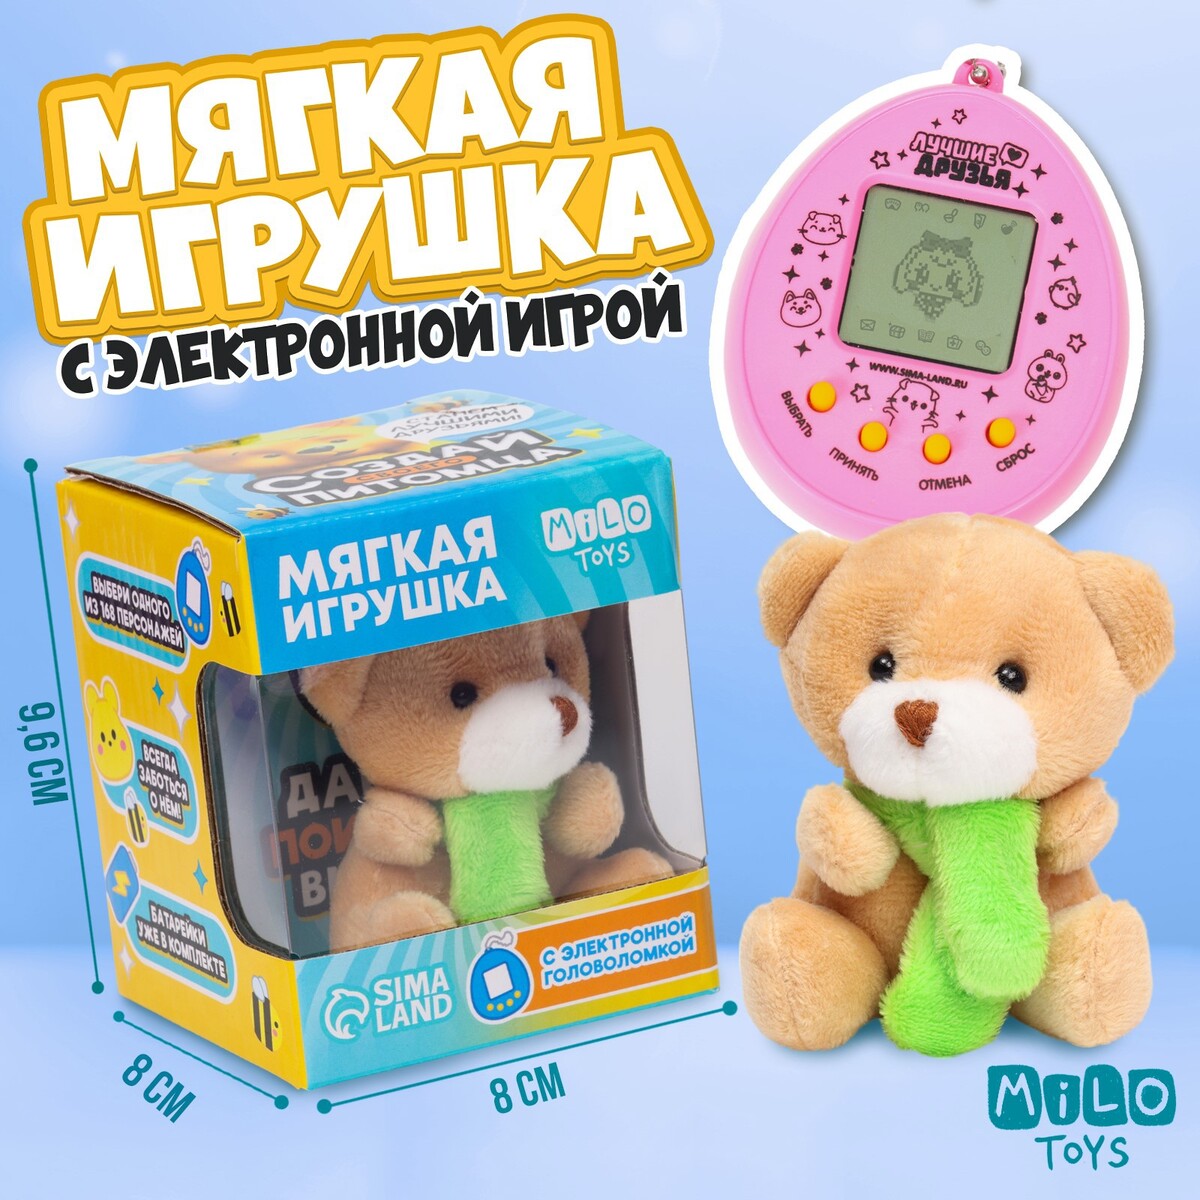 Мягкая игрушка с электронной головоломкой Milo toys